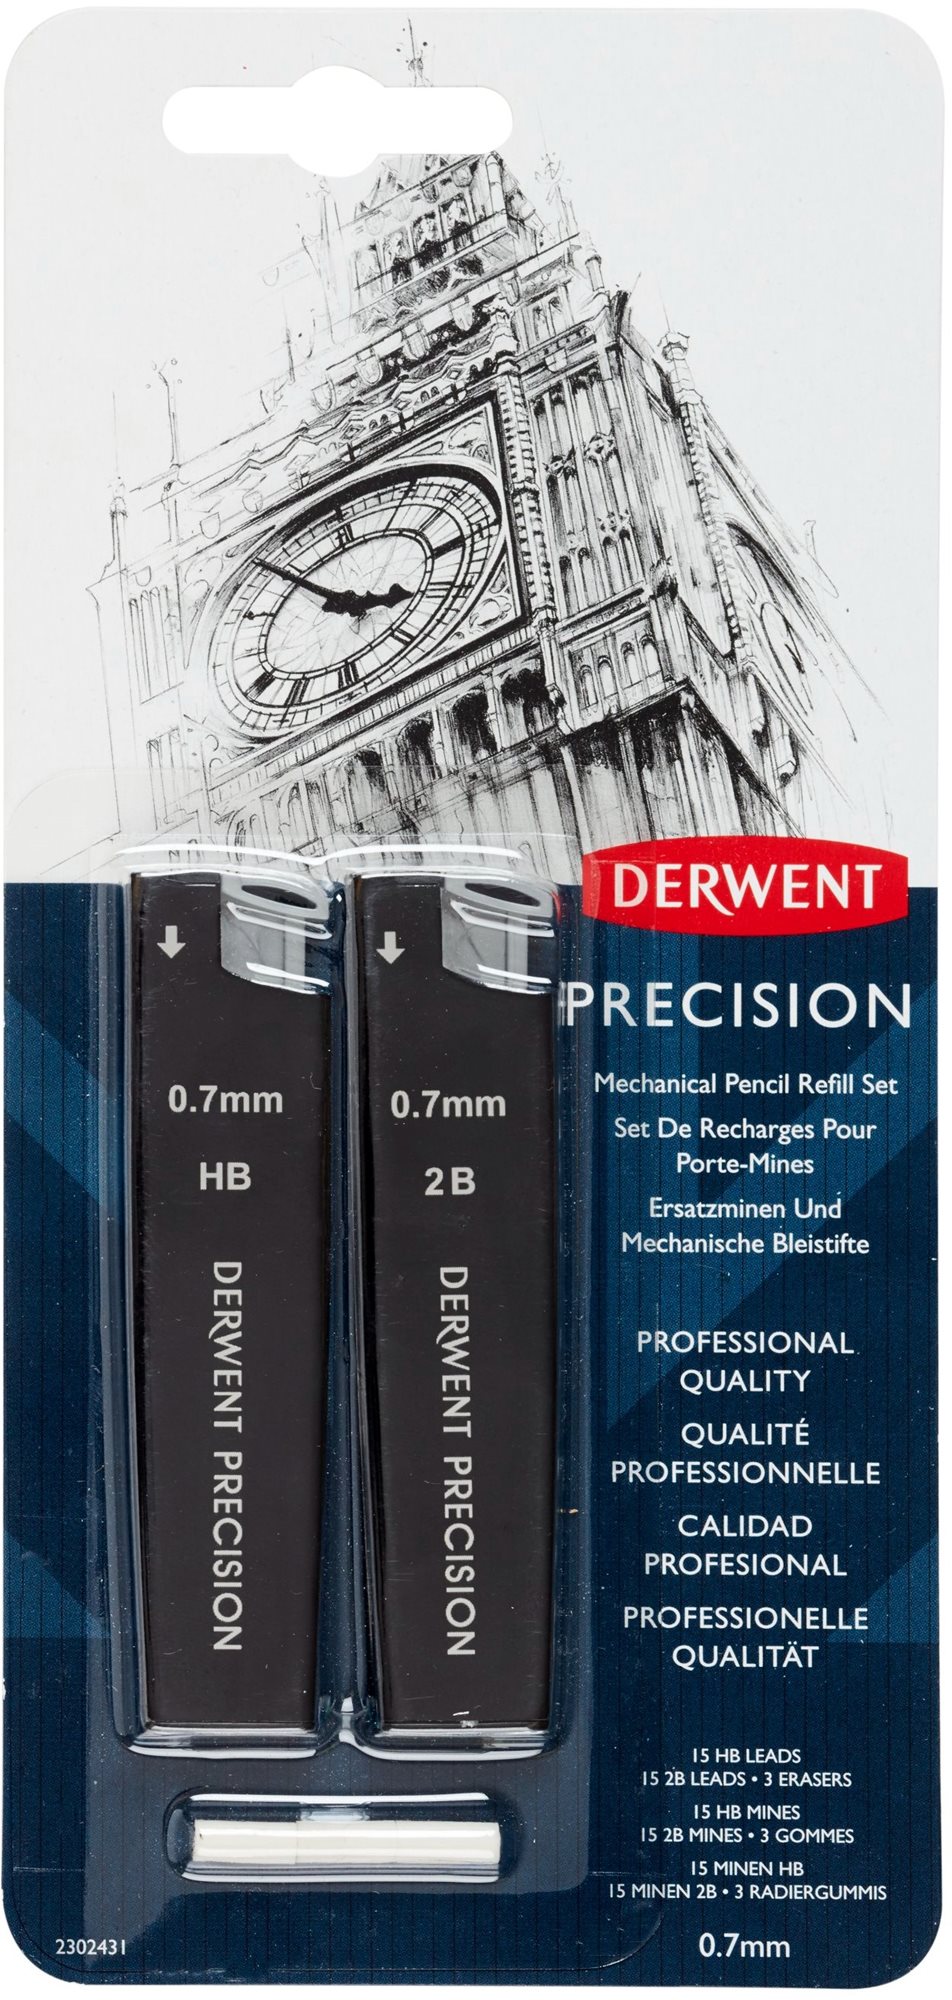 DERWENT Precision Mechanical Pencil Refill Set 0,7 mm HB és 2B, 30 ceruzabél a csomagban + 3 radírgu